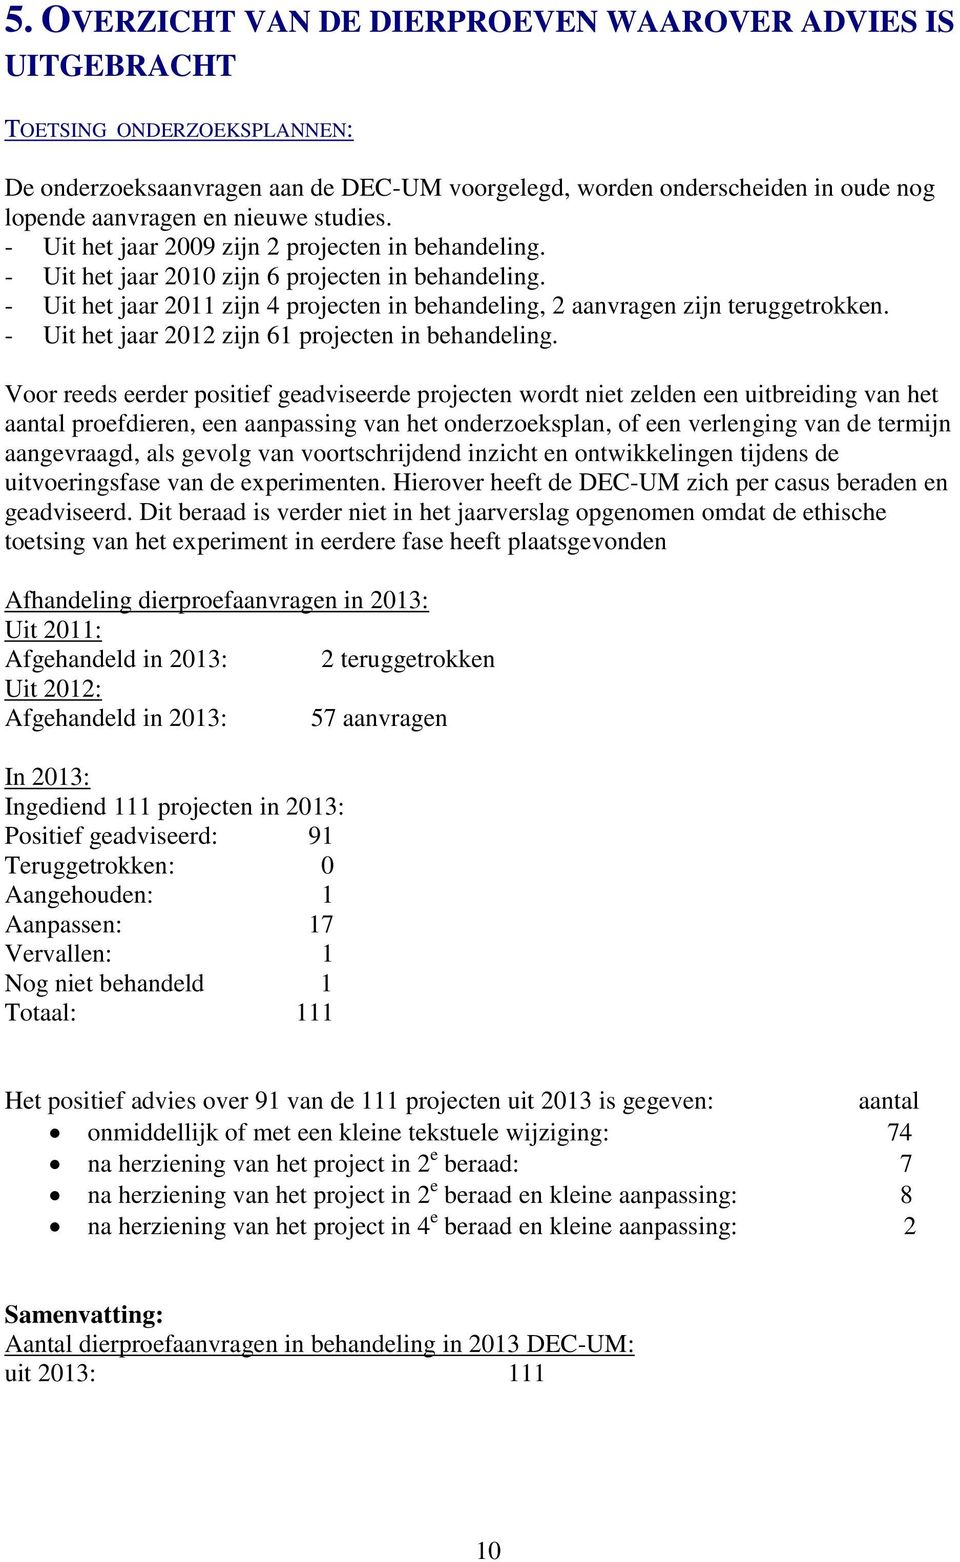 - Uit het jaar 2011 zijn 4 projecten in behandeling, 2 aanvragen zijn teruggetrokken. - Uit het jaar 2012 zijn 61 projecten in behandeling.